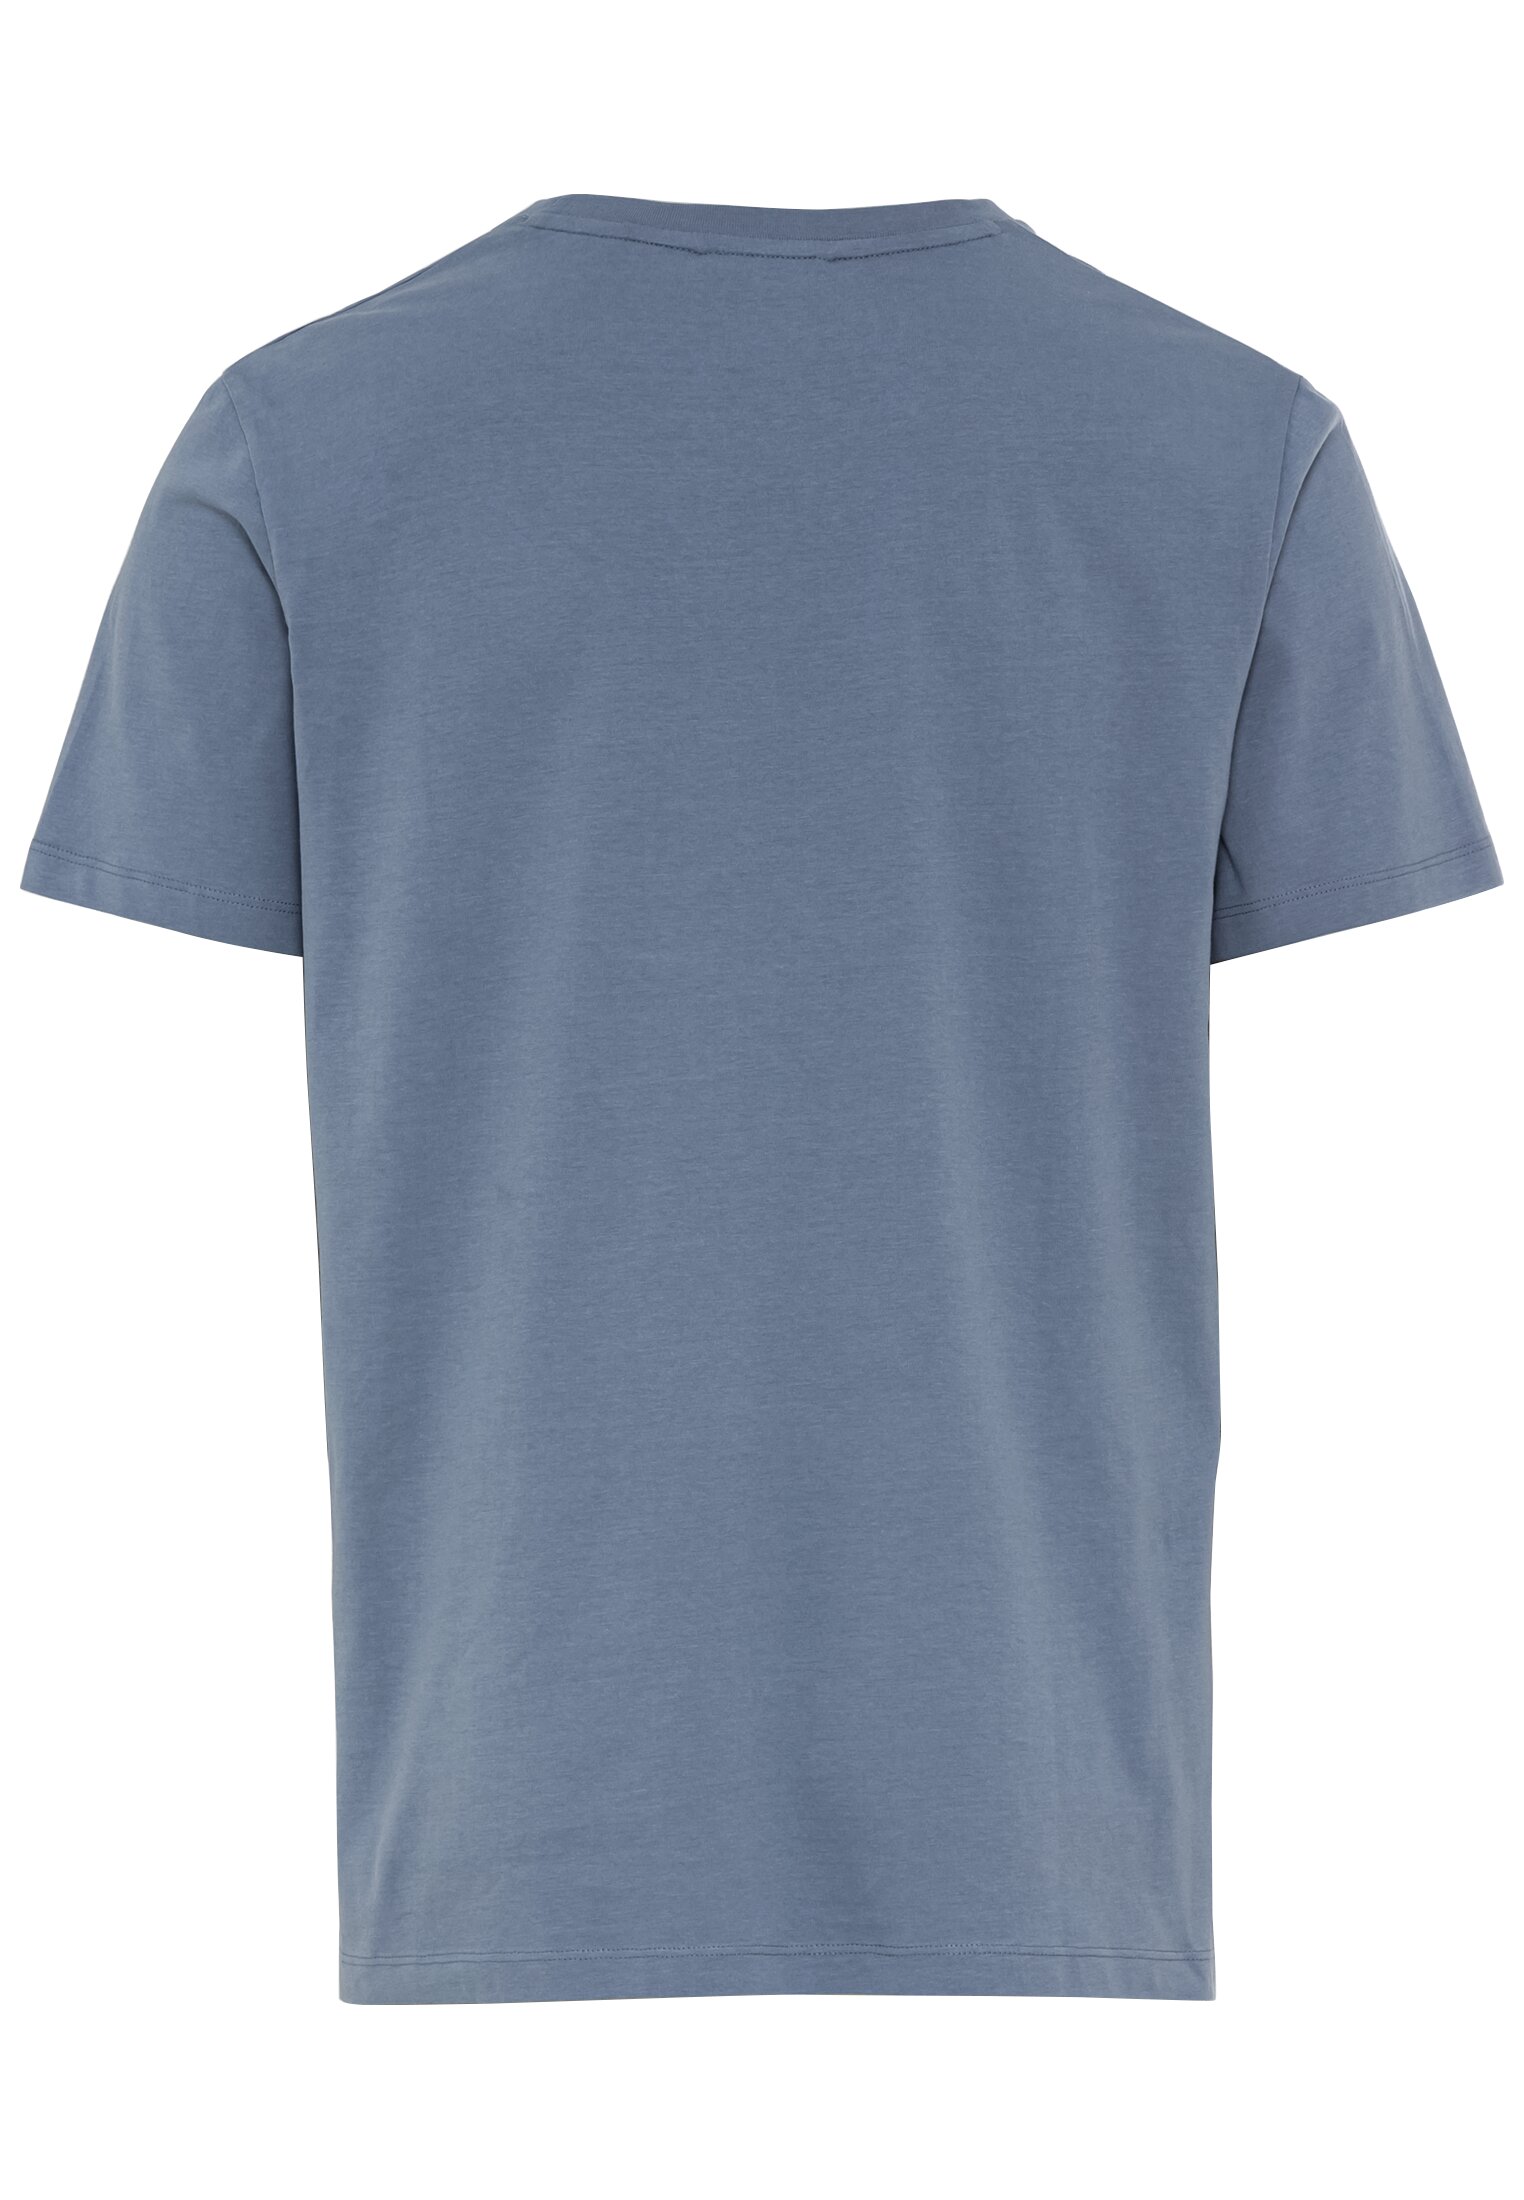 Мужская футболка Camel Active, голубая, цвет голубой, размер 58 - фото 3